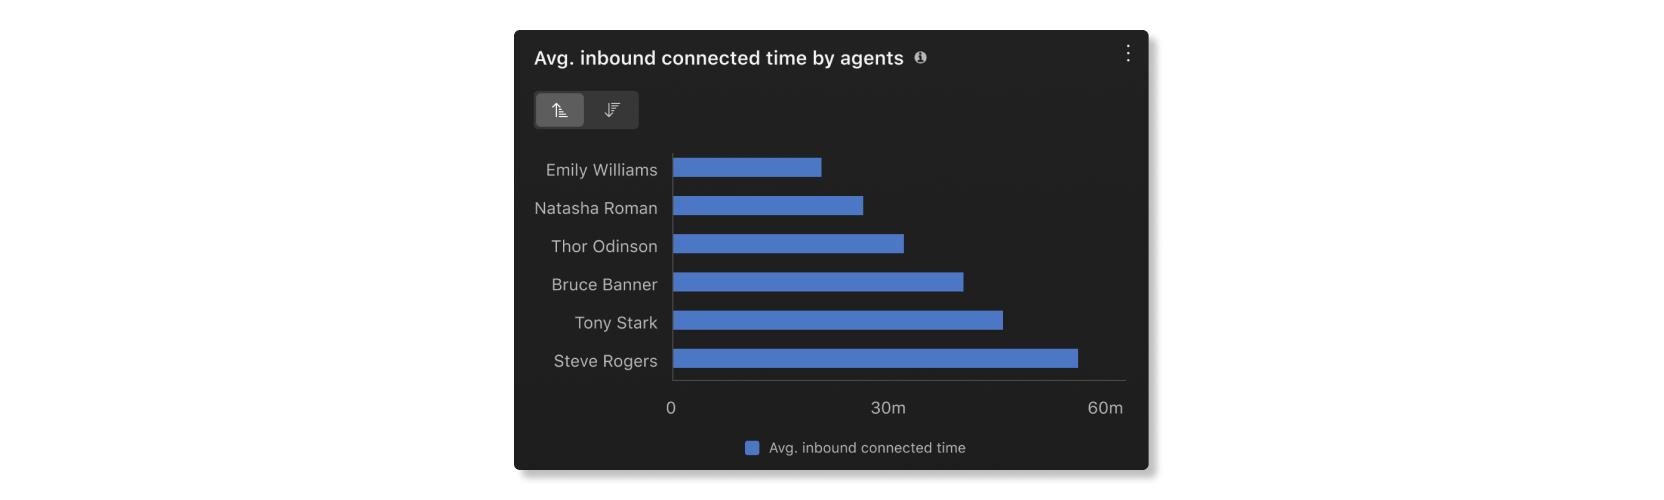 Gráfico de tiempo conectado entrante medio por agentes en estadísticas de agentes de análisis de Customer Essentials